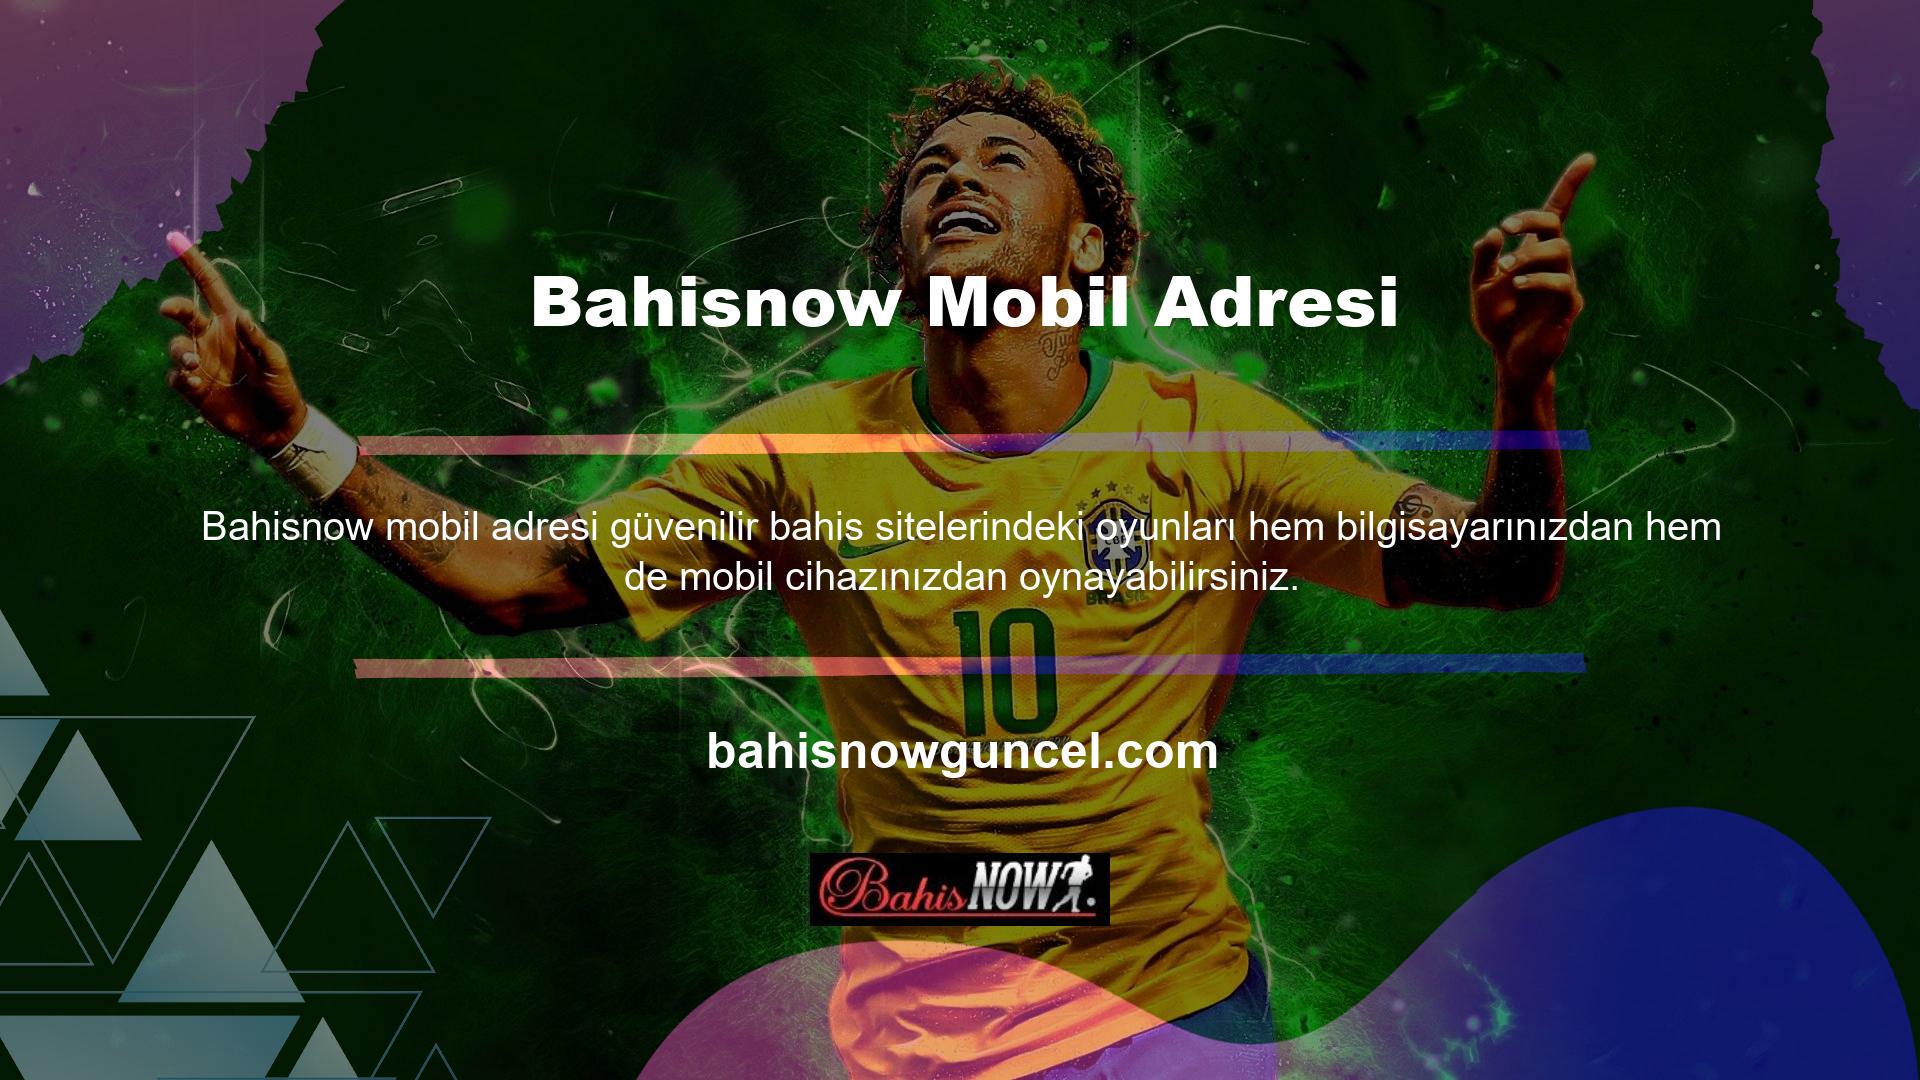 Bahisnow bahis sitesi bağlantısını Google Play üzerinden akıllı telefonunuza indirdikten sonra “Bahisnow Son Adres” bölümüne giderek siteye giriş yapabilirsiniz